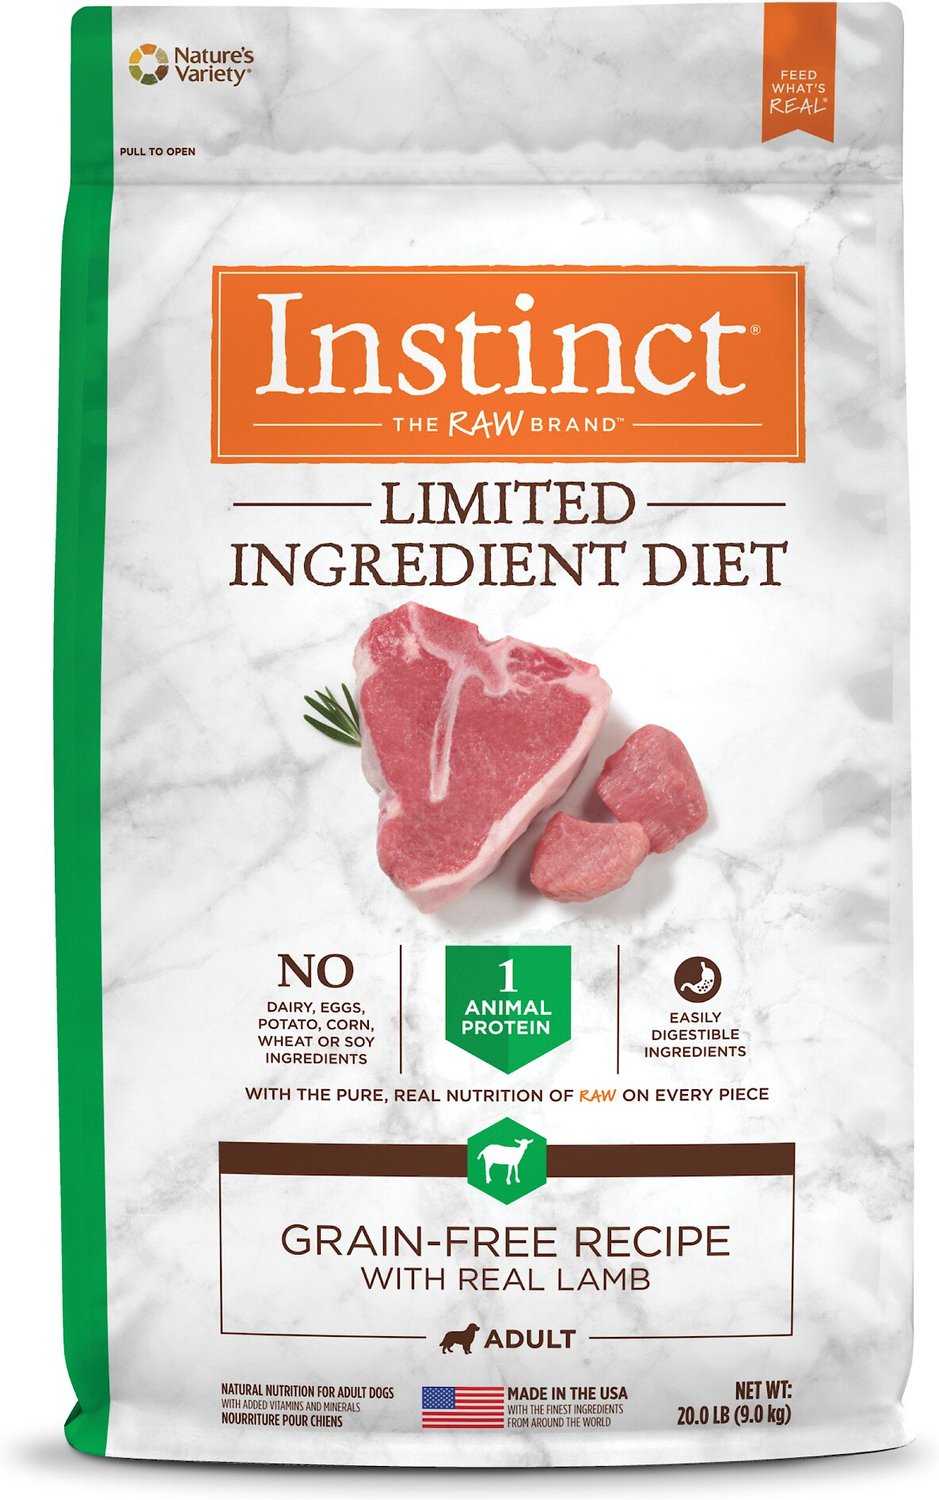 Instinct Limited Ingredient Diet Grain-Free Recipe 